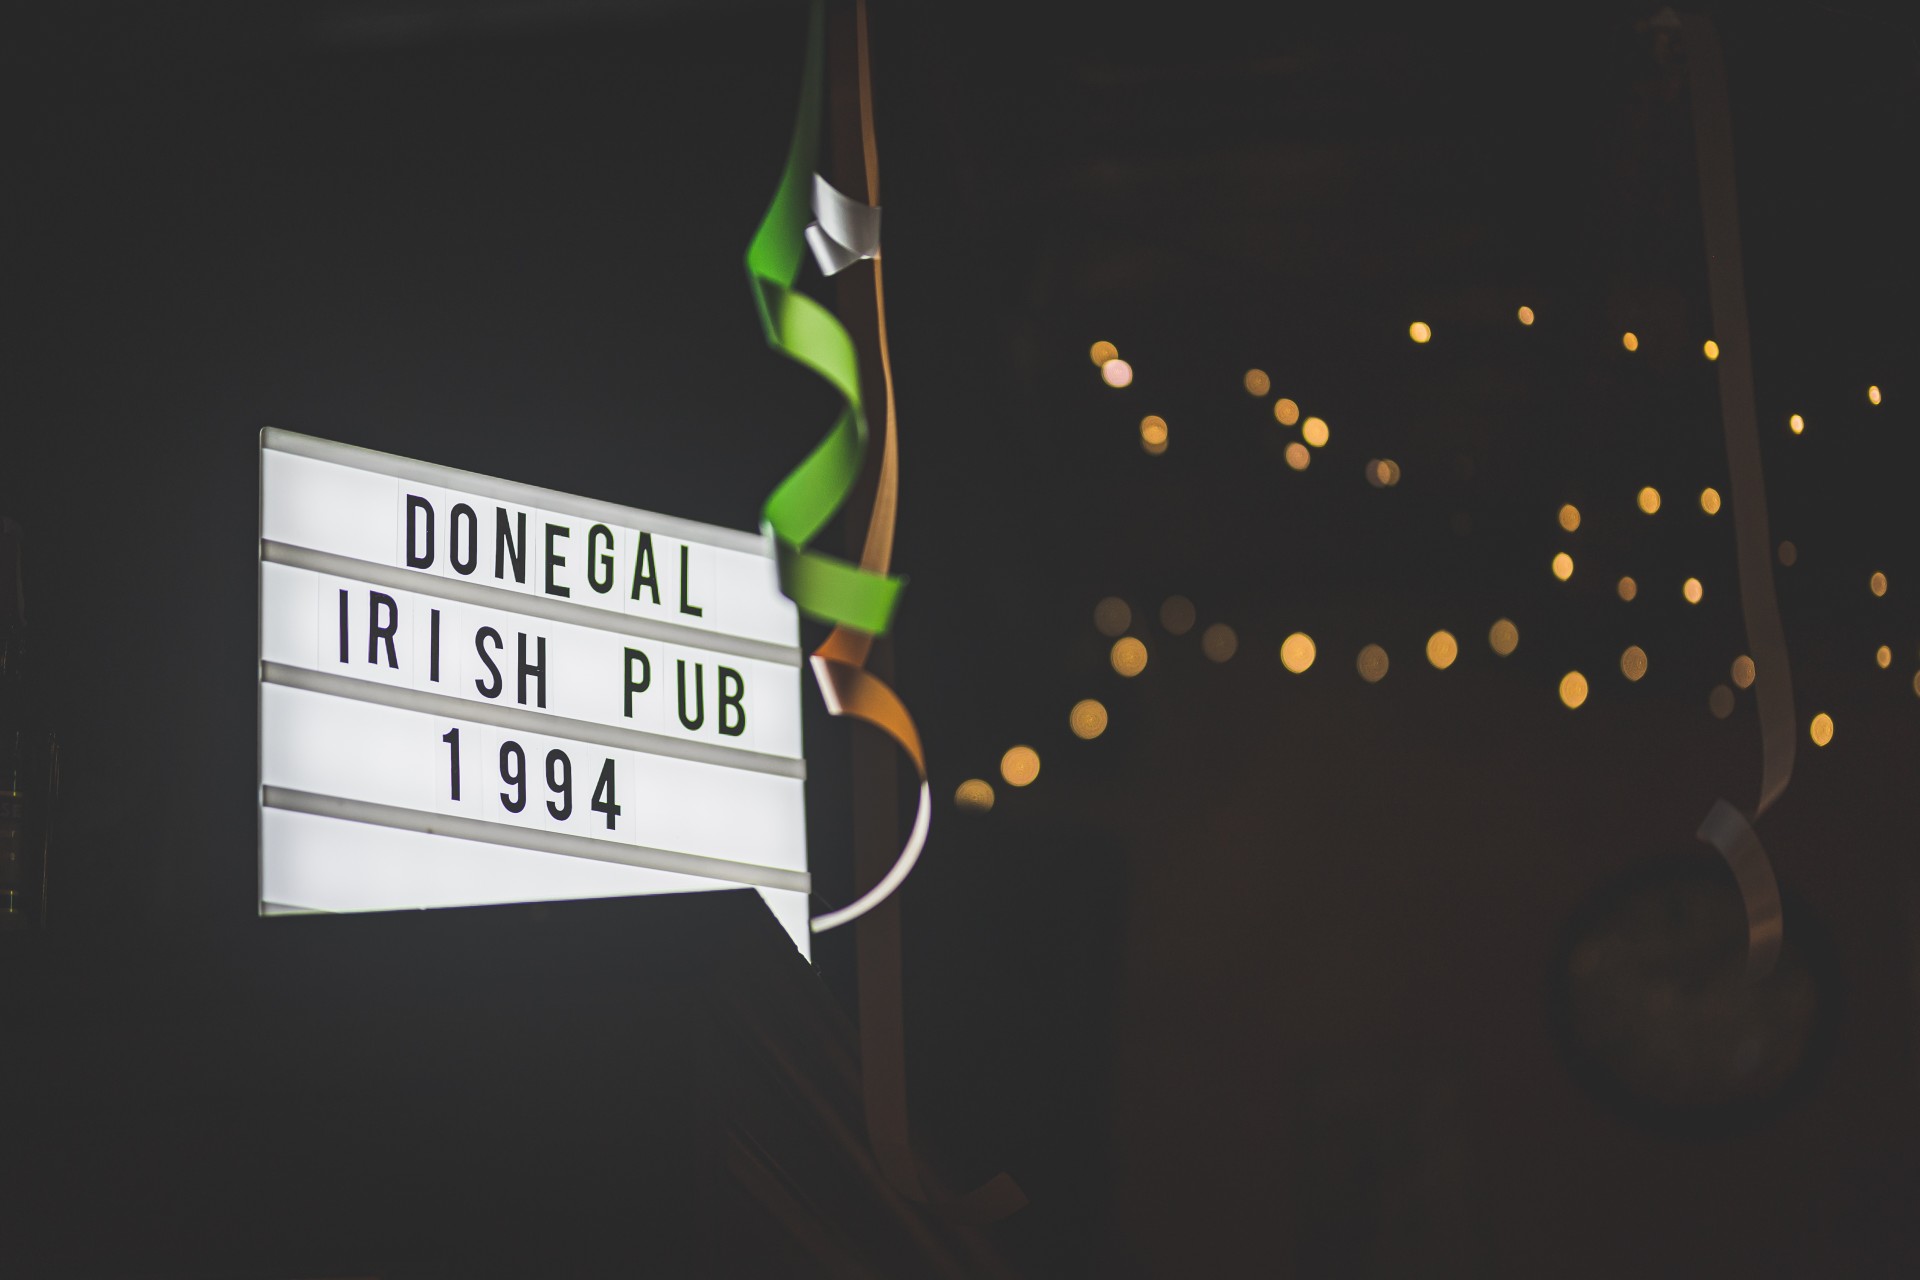 The Donegal Irish Pub